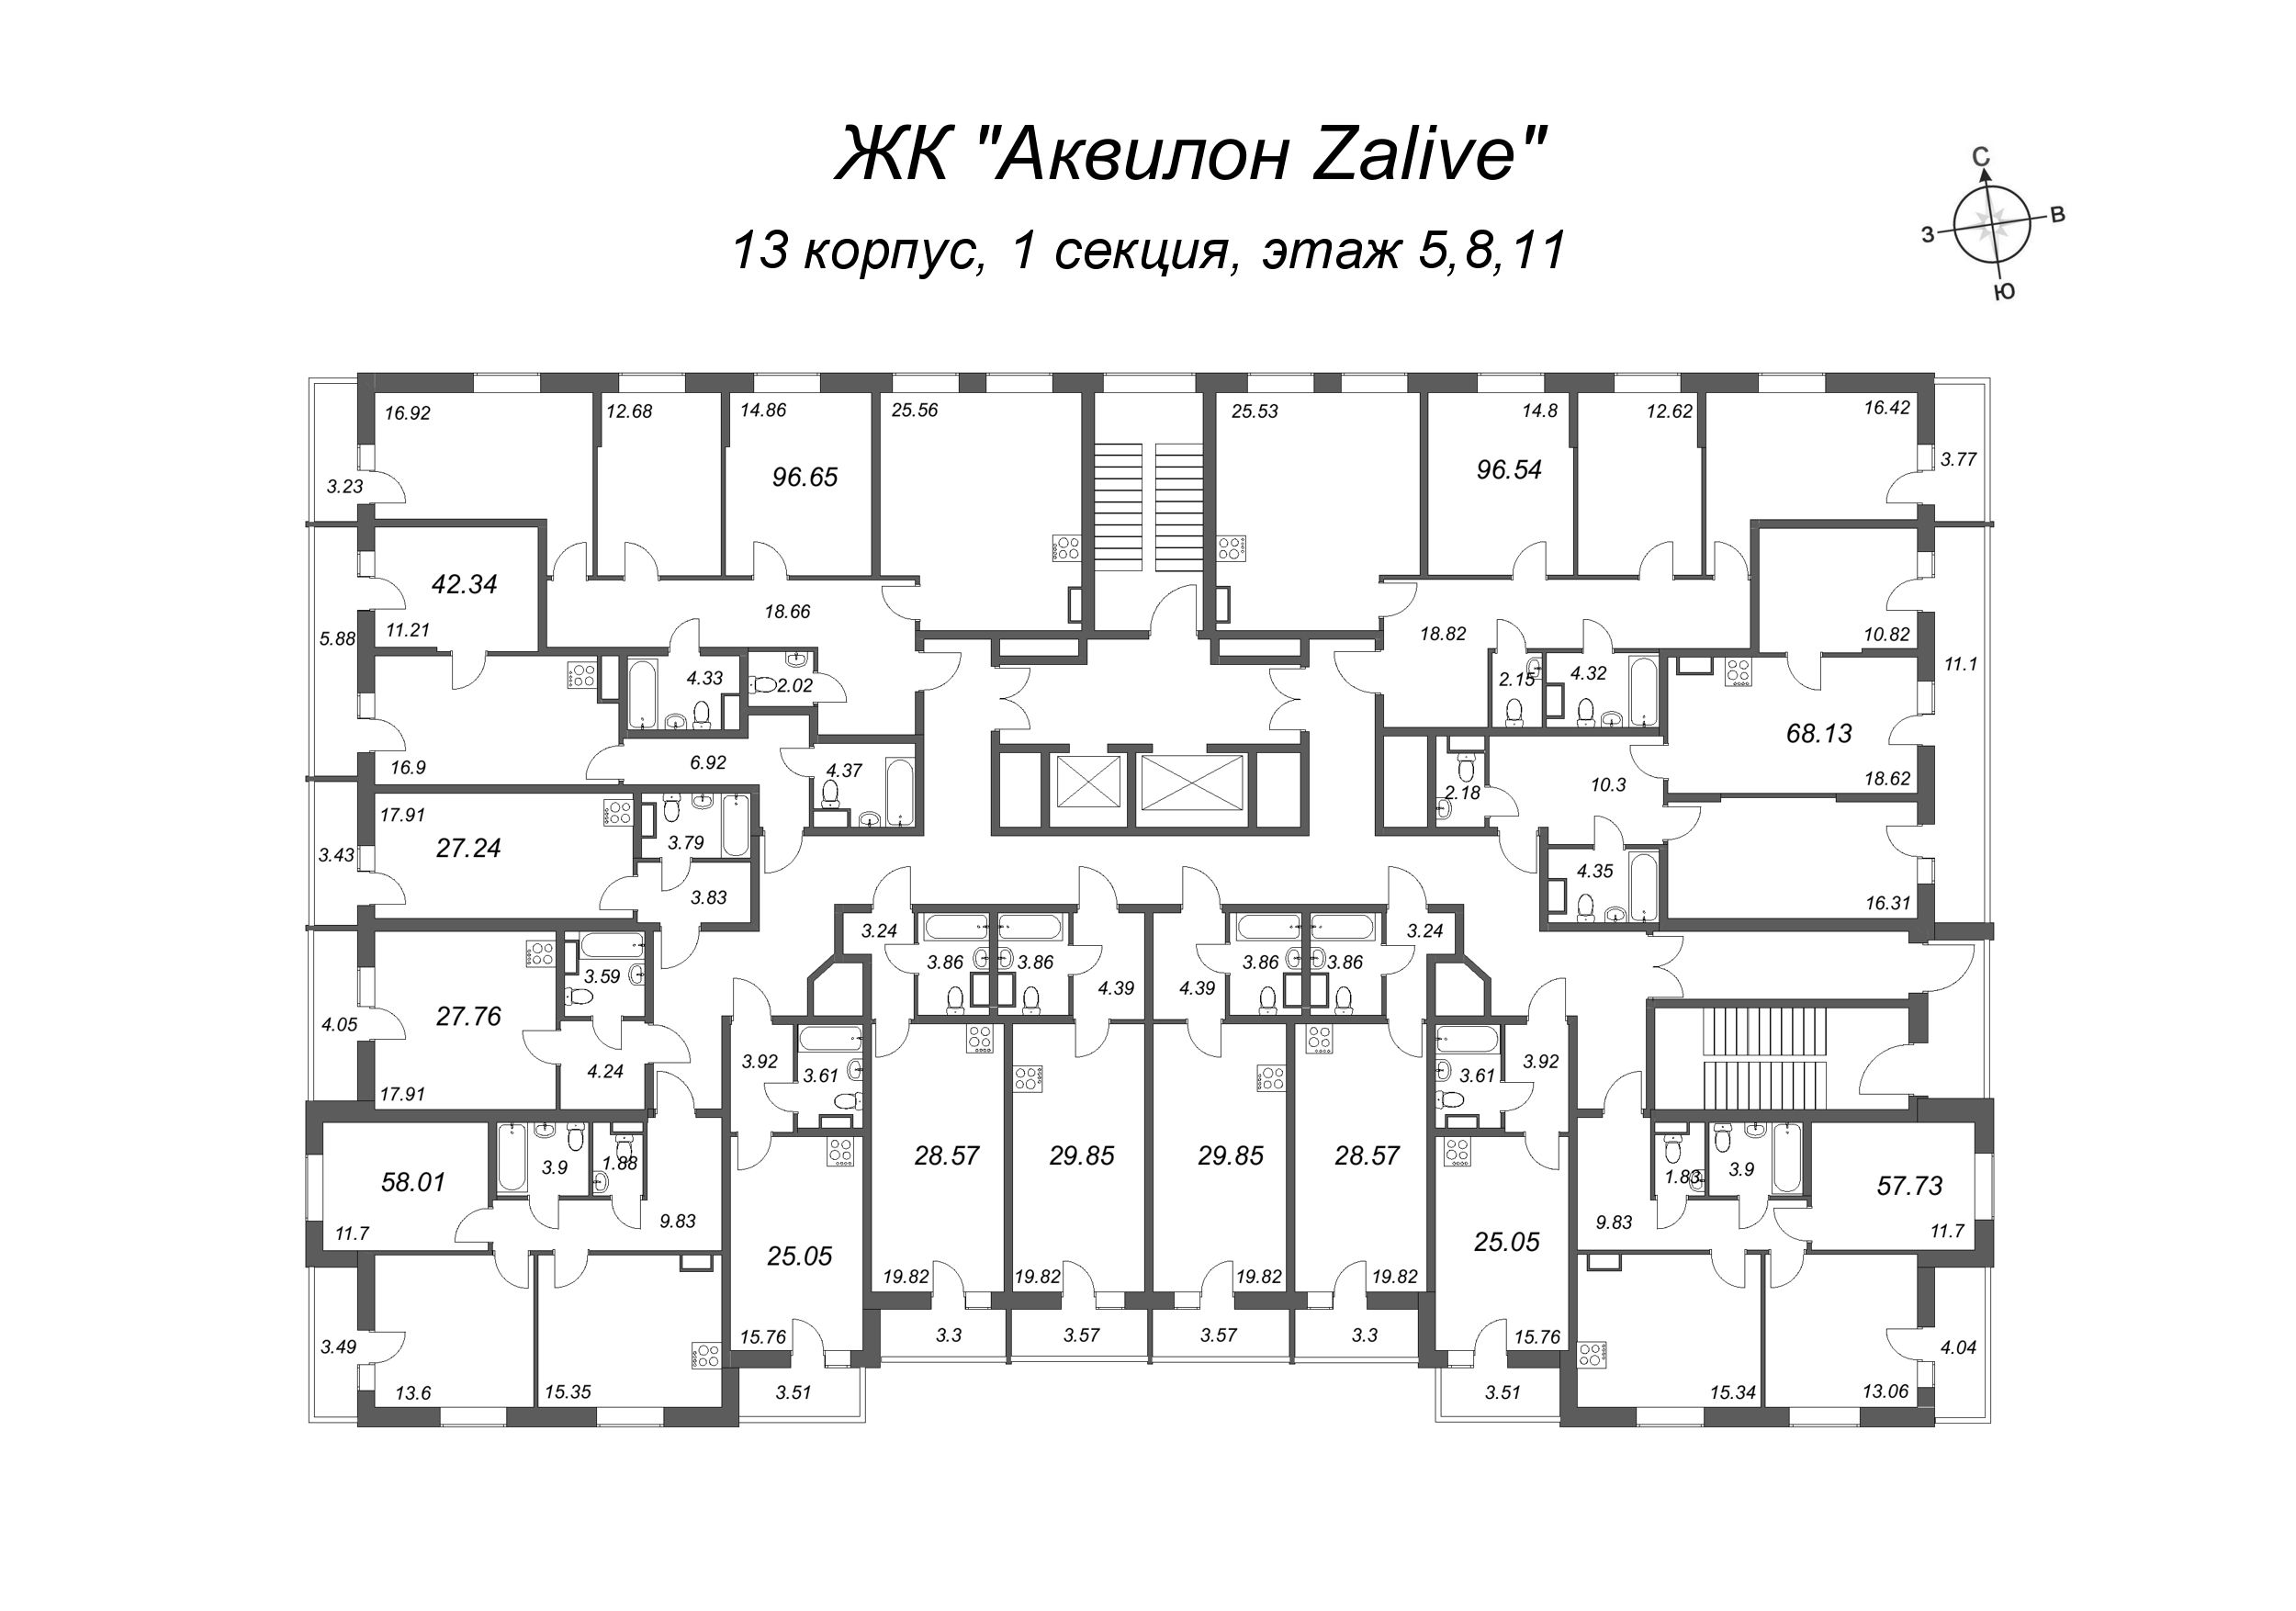 3-комнатная (Евро) квартира, 67.8 м² в ЖК "Аквилон Zalive" - планировка этажа